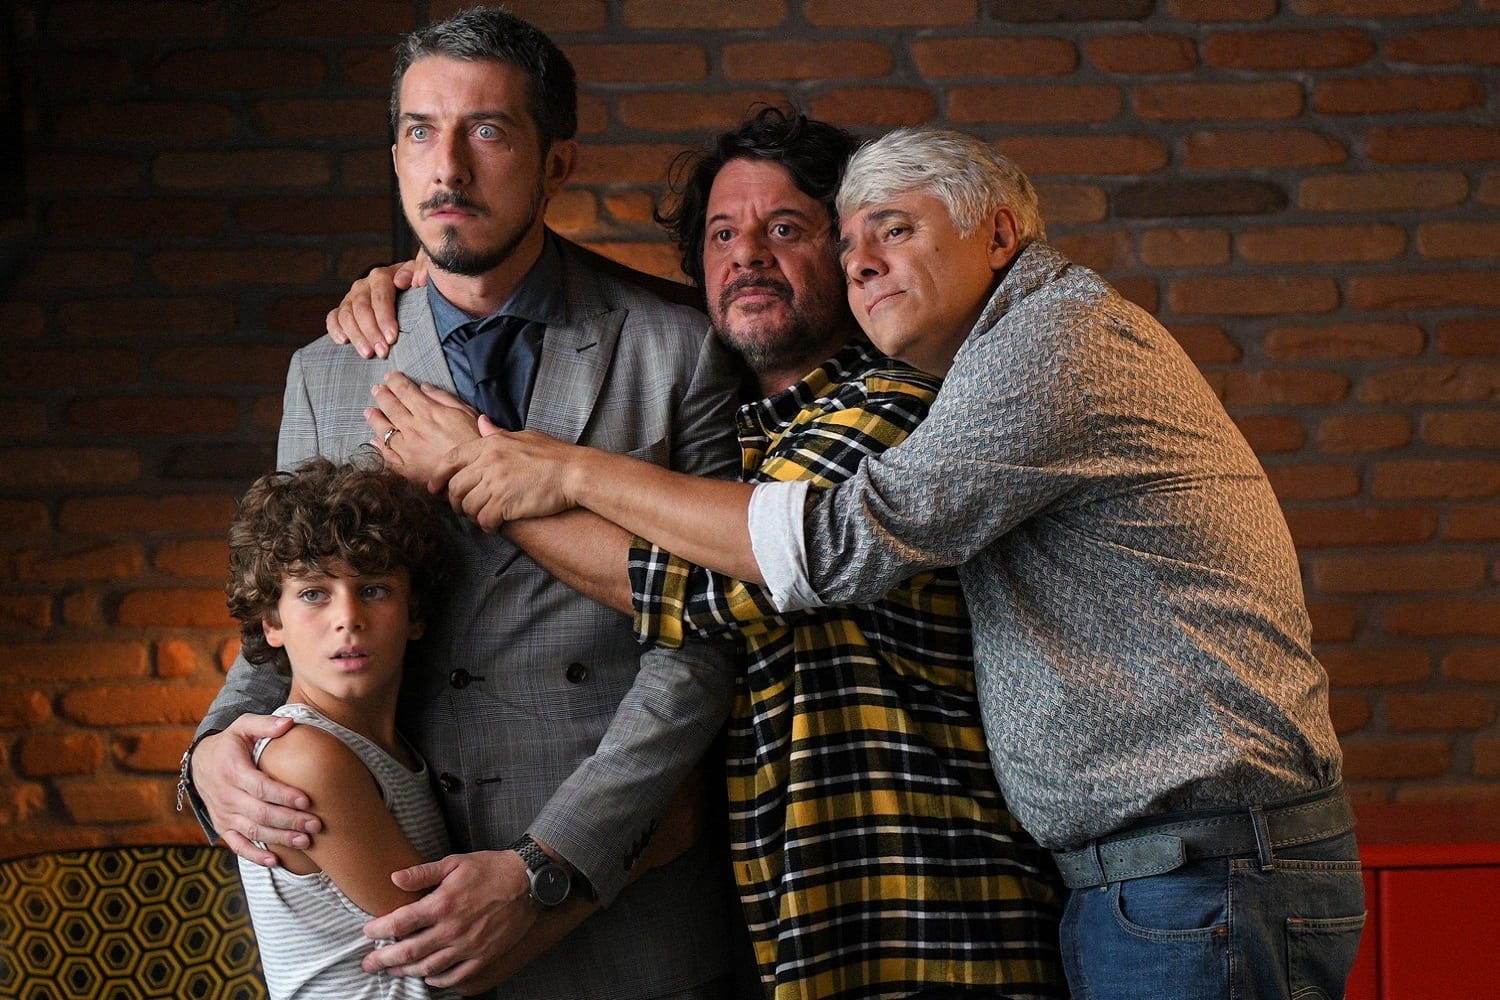 CinemaTivu: Modalità Aereo (Ita 2019), con Lillo, Paolo Ruffini, Violante Placido, un film diretto da Fausto Brizzi, in prima tv free su RaiUno